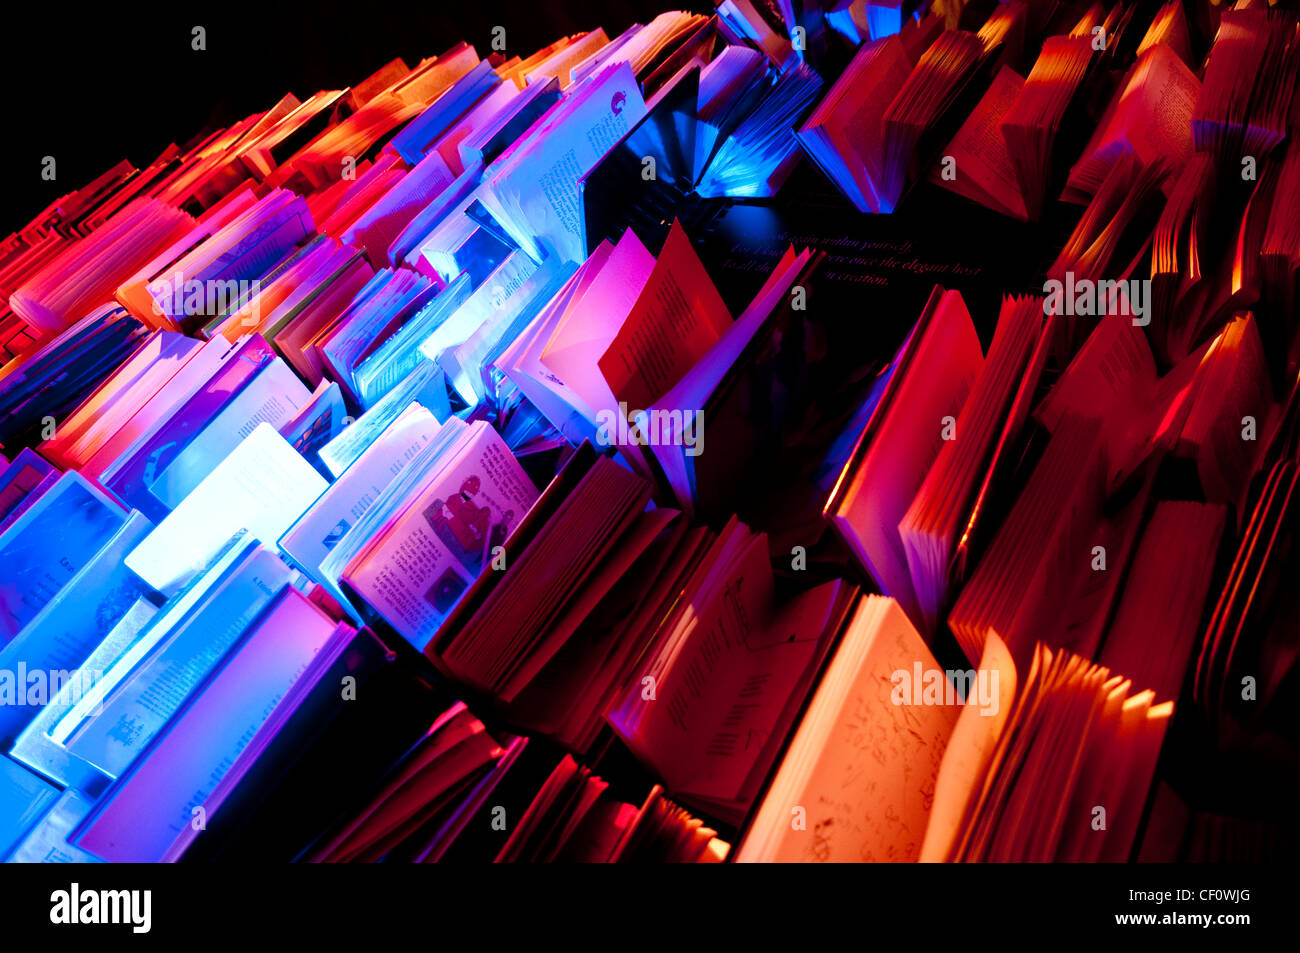 Estantería de libros artísticos con distintos colores de pantalla Foto de stock